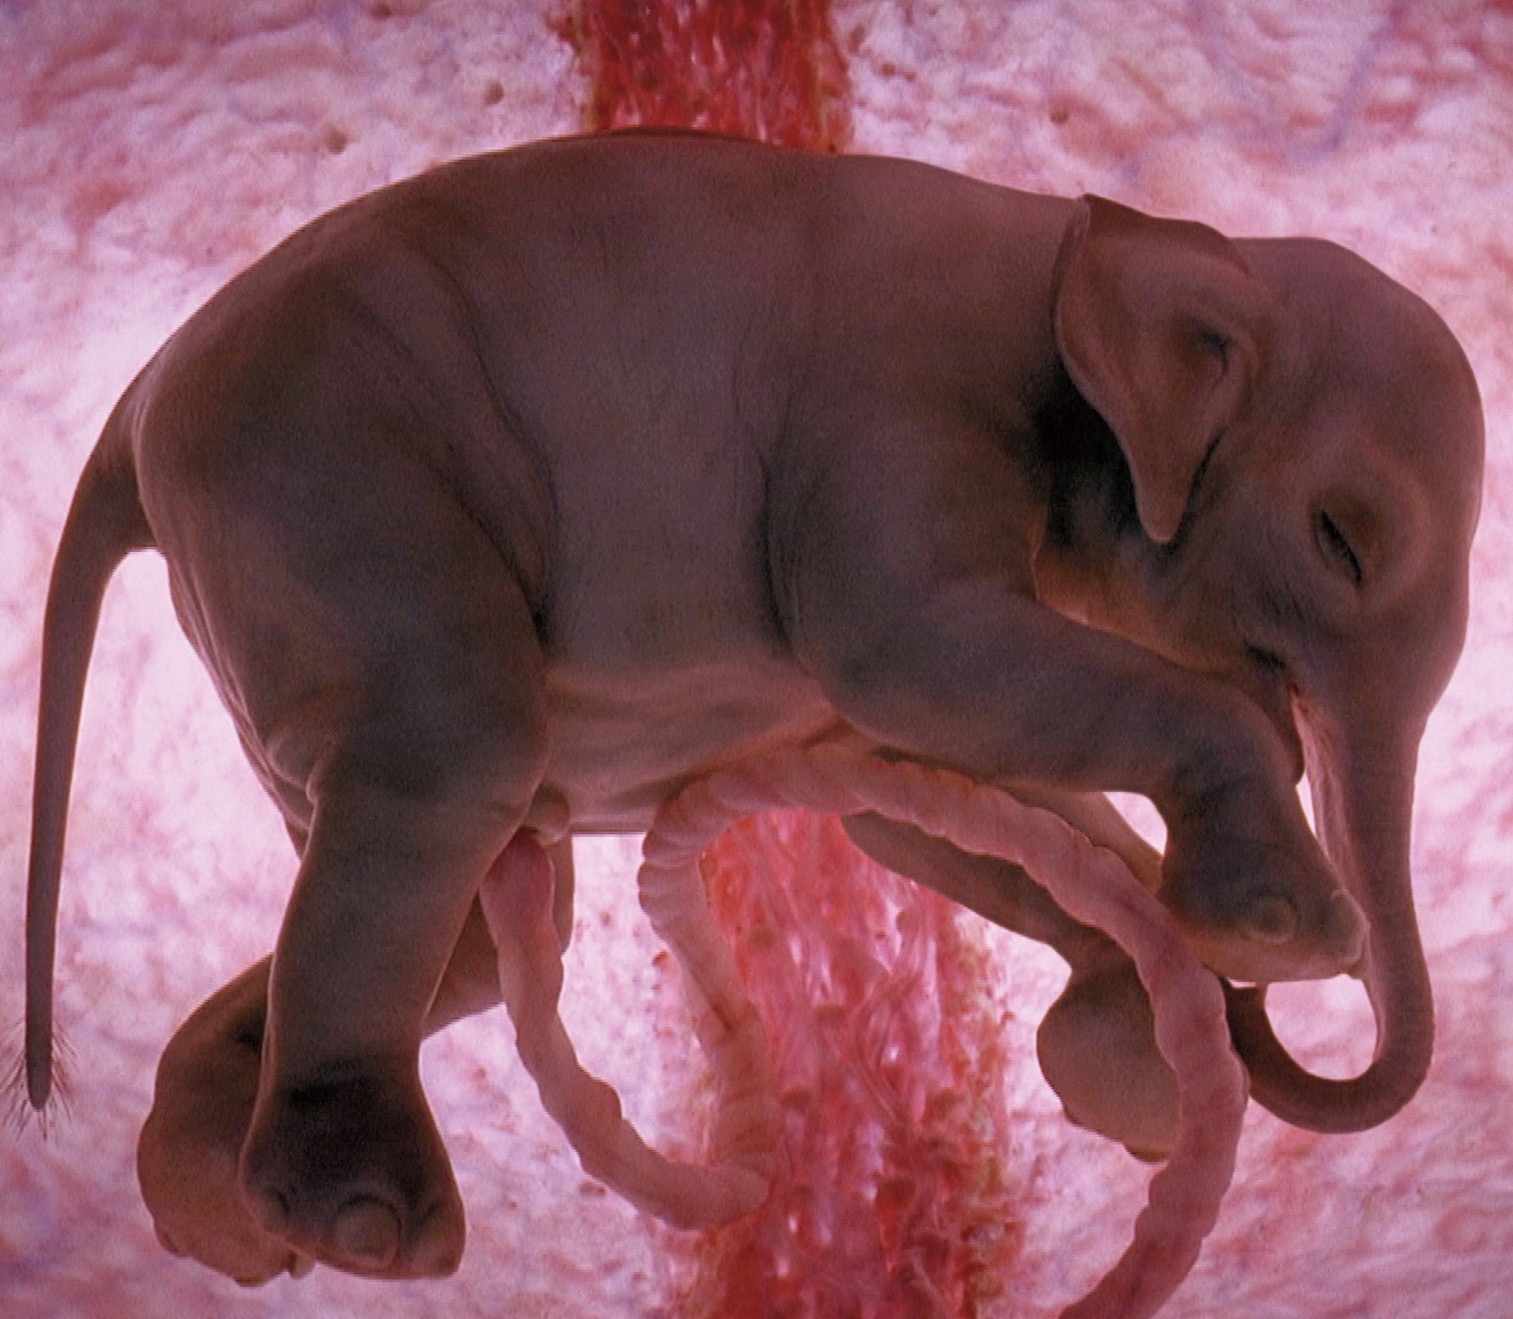 National Geographic показали реальные снимки животных в утробе матери